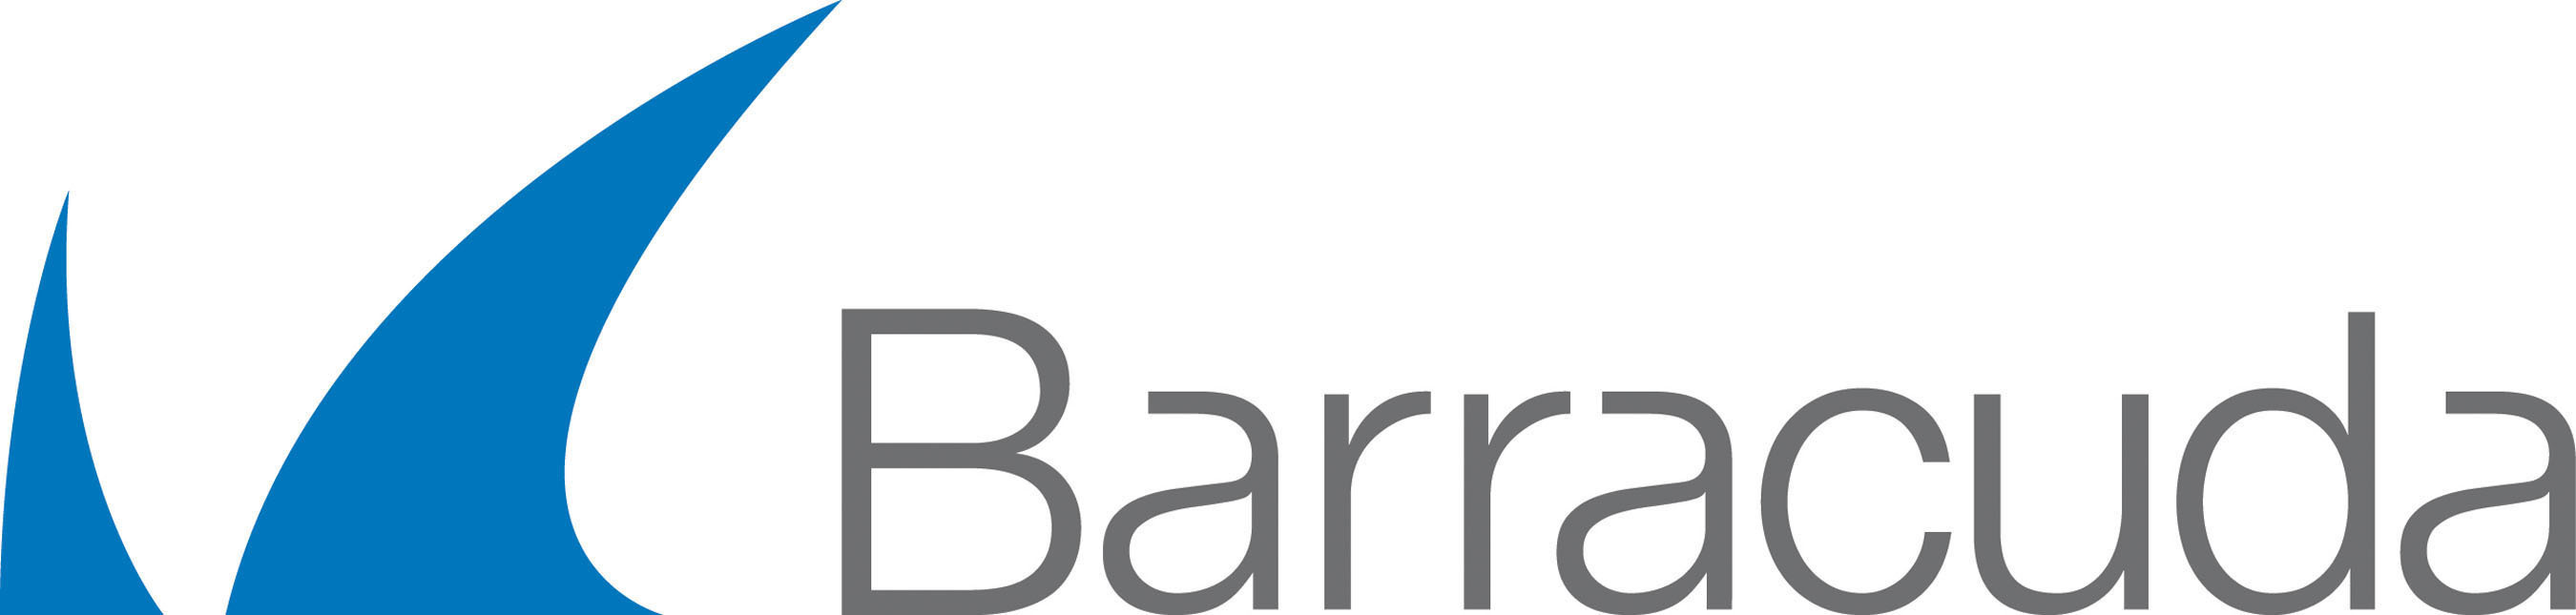 Barracuda Logo. (PRNewsFoto/Barracuda Networks, Inc.)